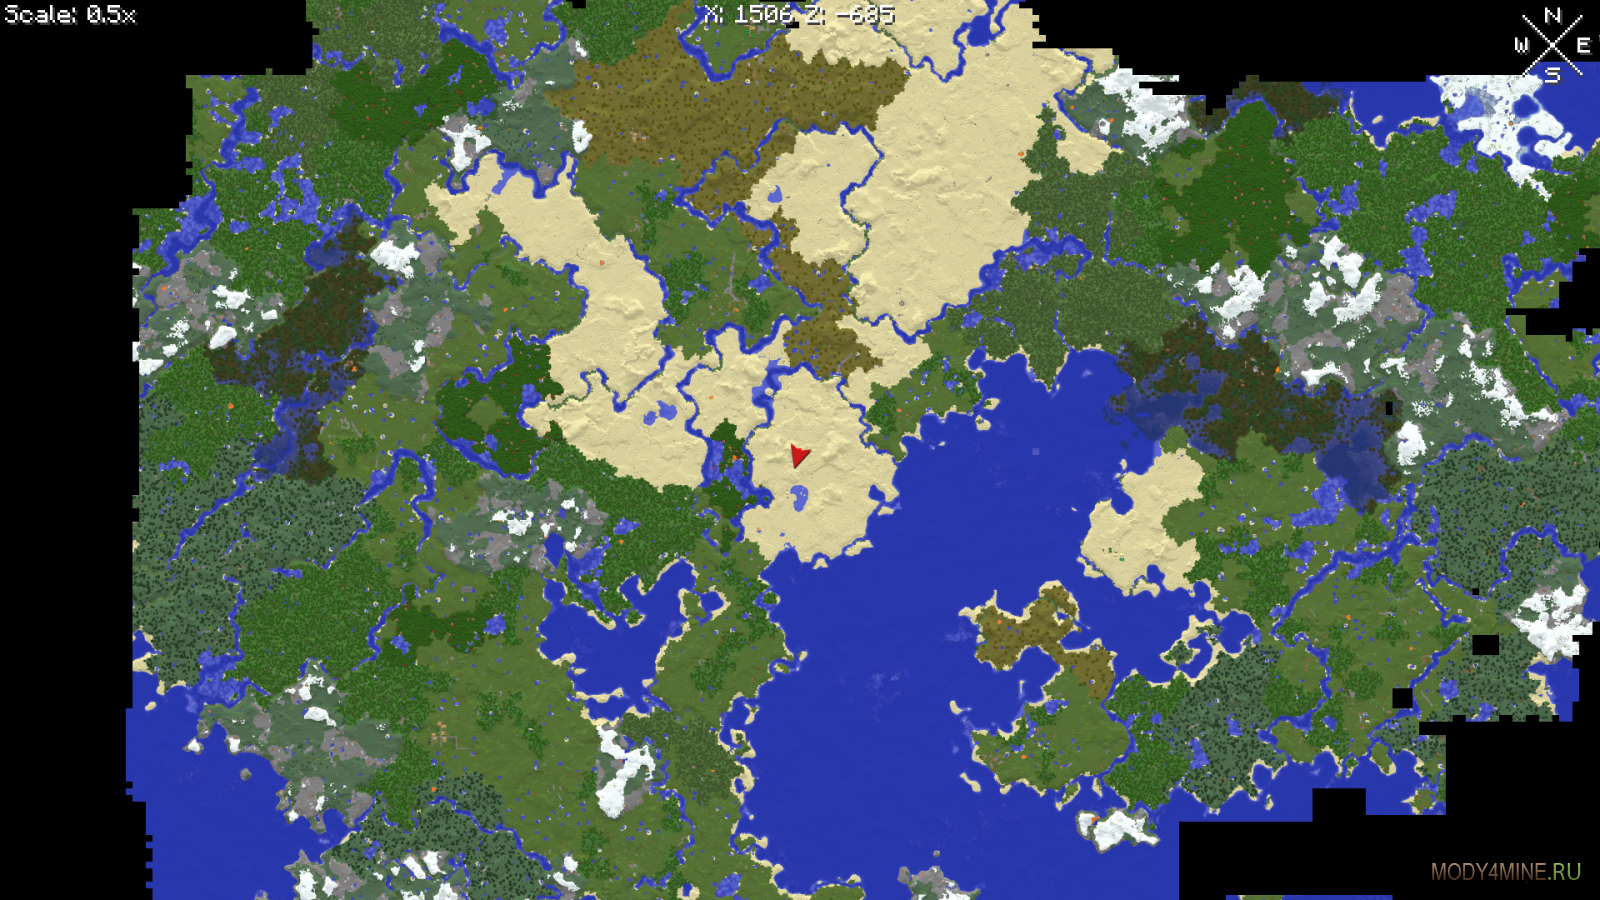 Minecraft maps 1.20 4. Карта мира в майнкрафт 1.16.5. Карта земли в майнкрафт 1.16.5. Карта земли майнкрафт 1.17.1. Карта мира в майнкрафт 1.12.2.